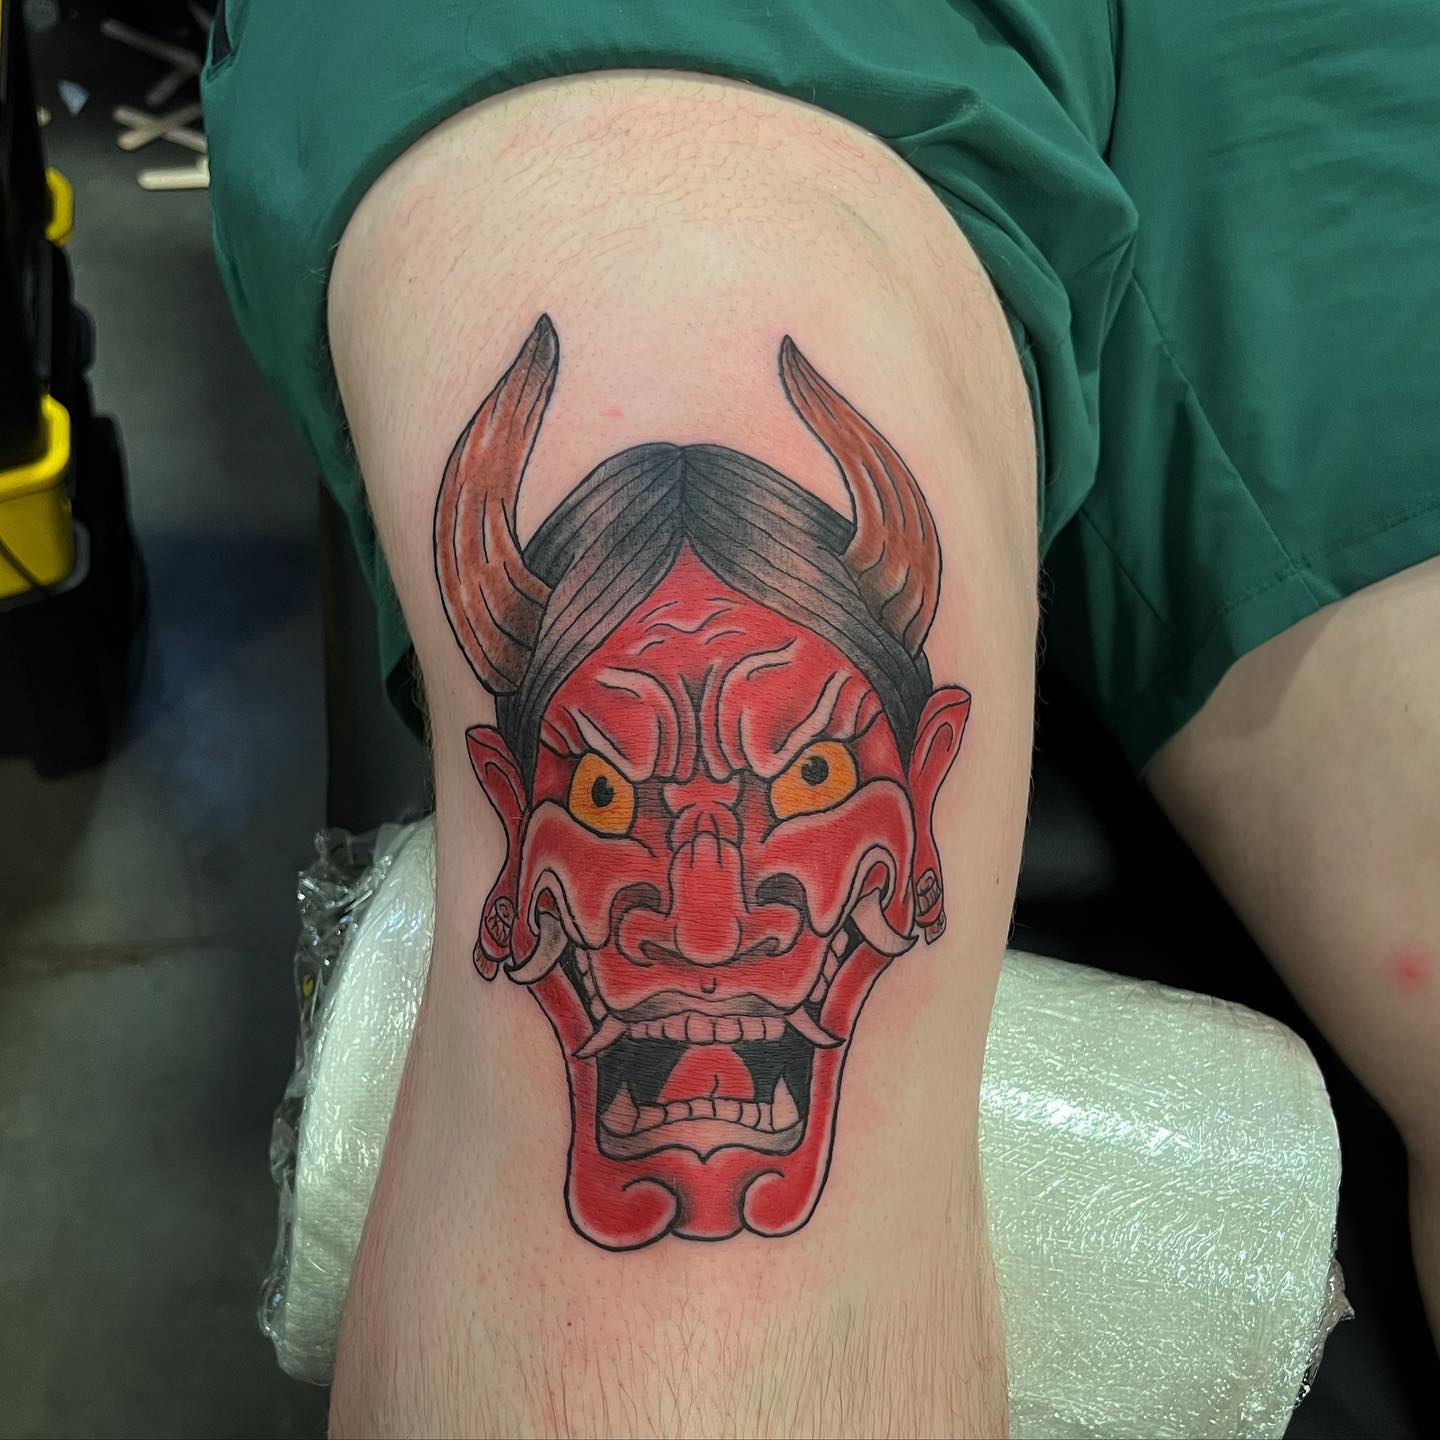 Tatuaje de rodilla del diablo